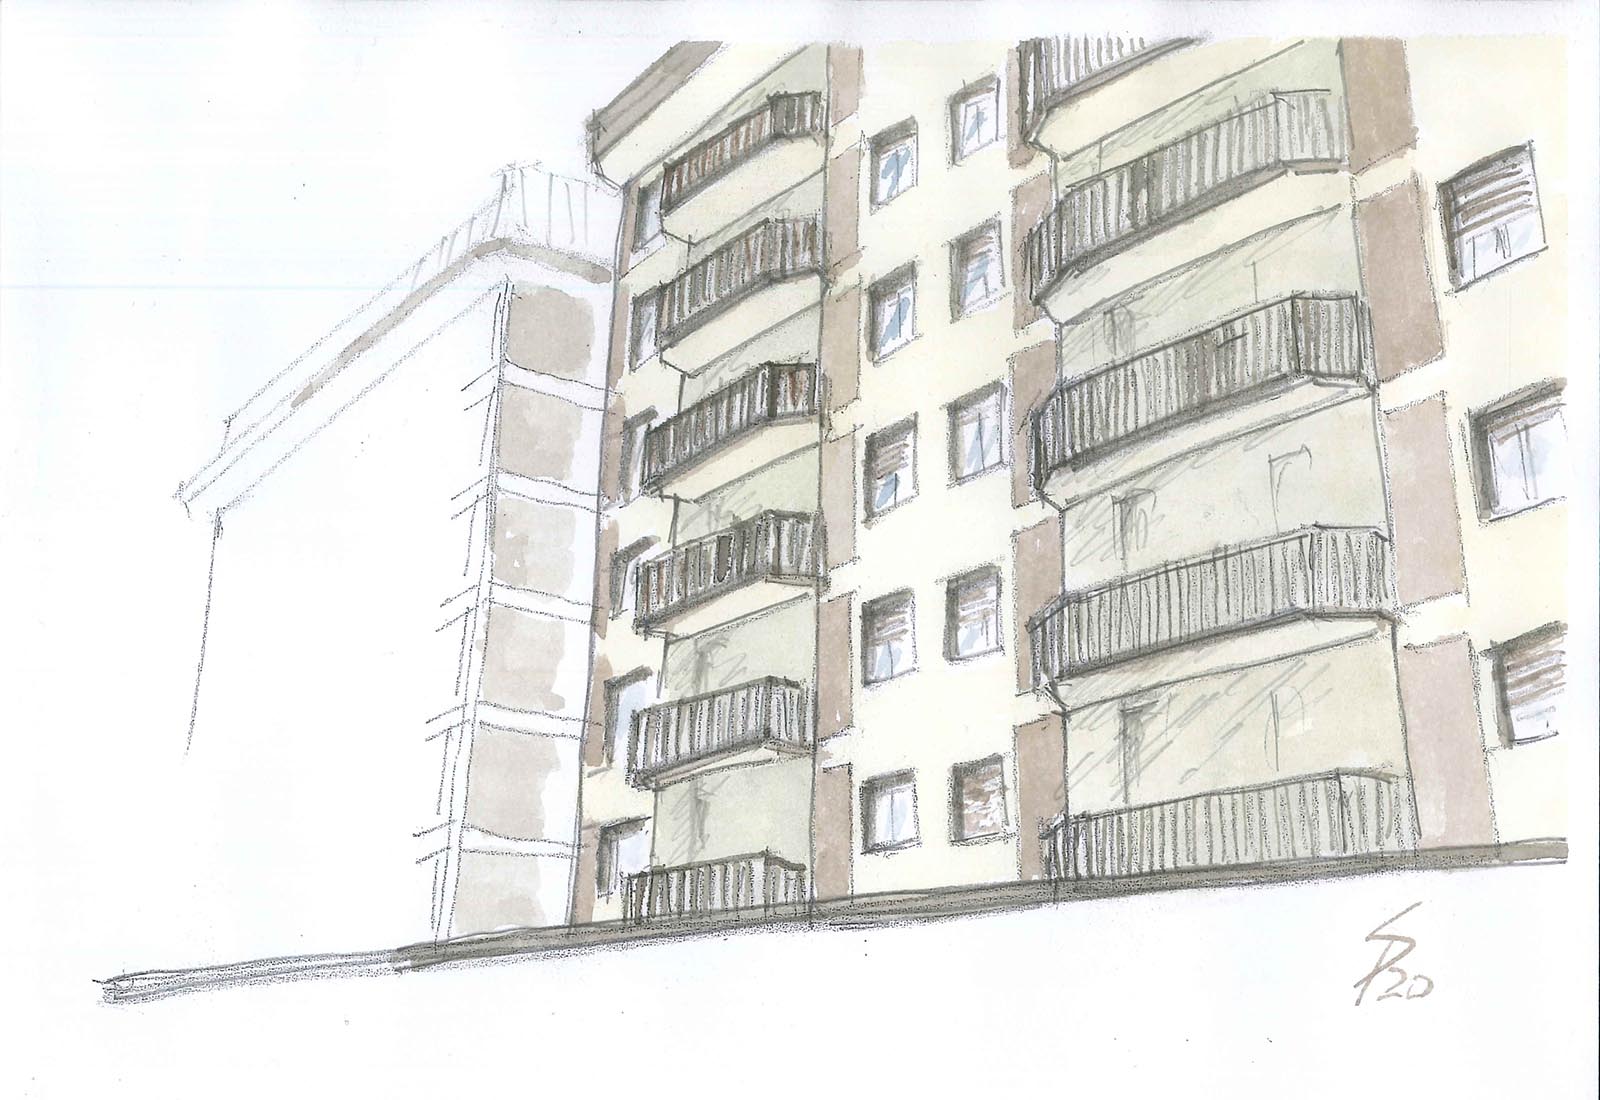 Residential ensemble in Europa street in Rho - Sketch